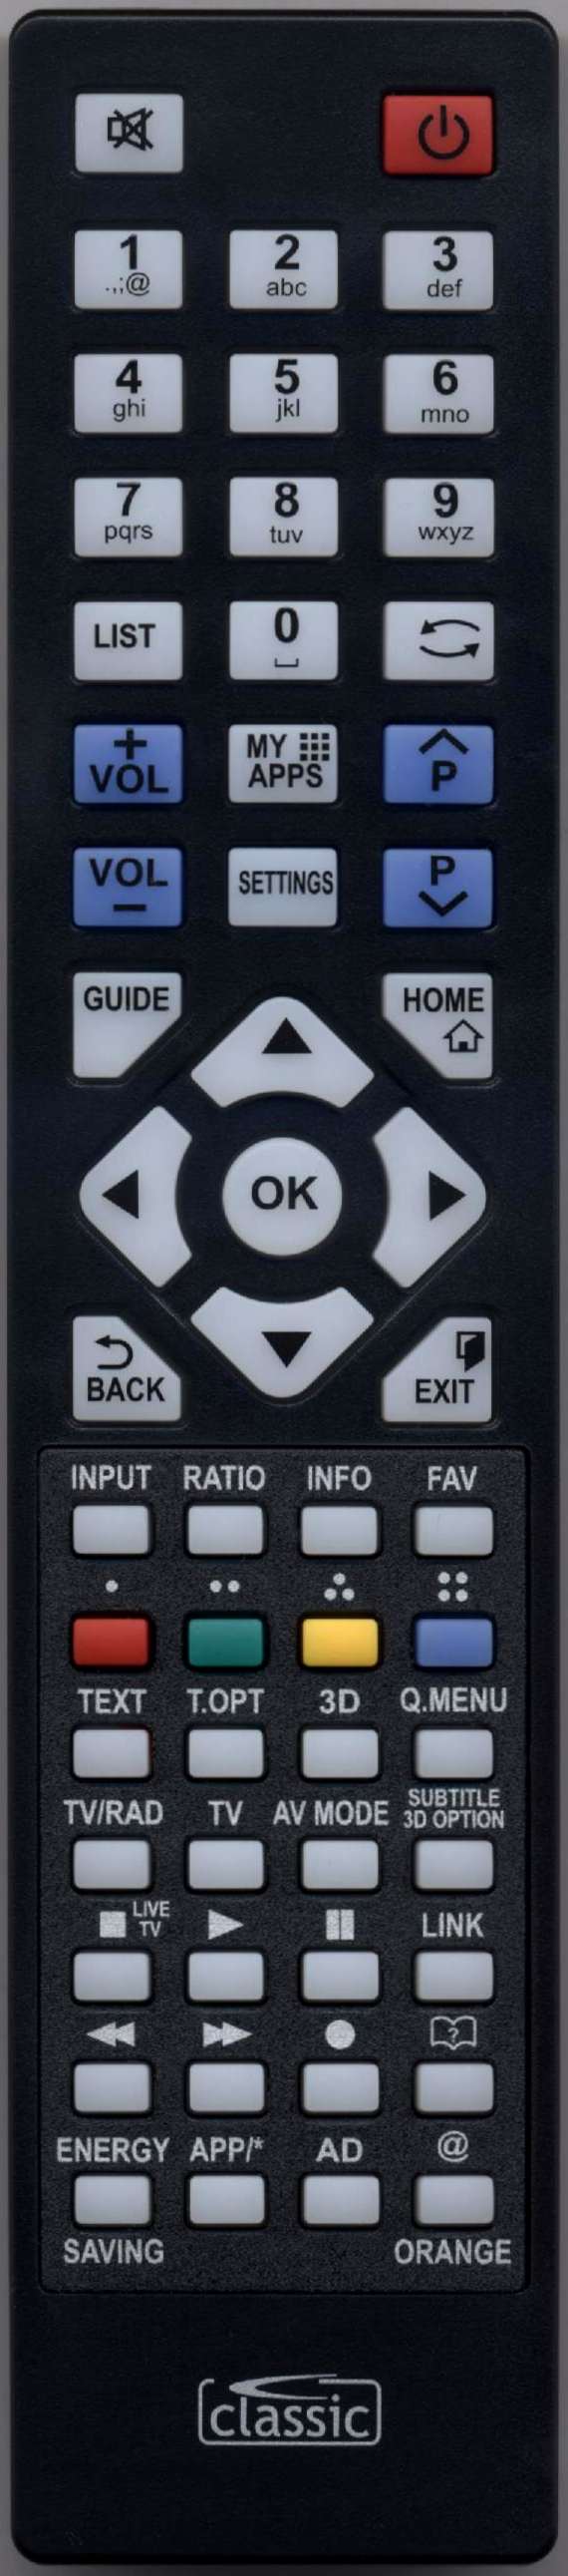 LG AKB73975728 Remote Control Alternative